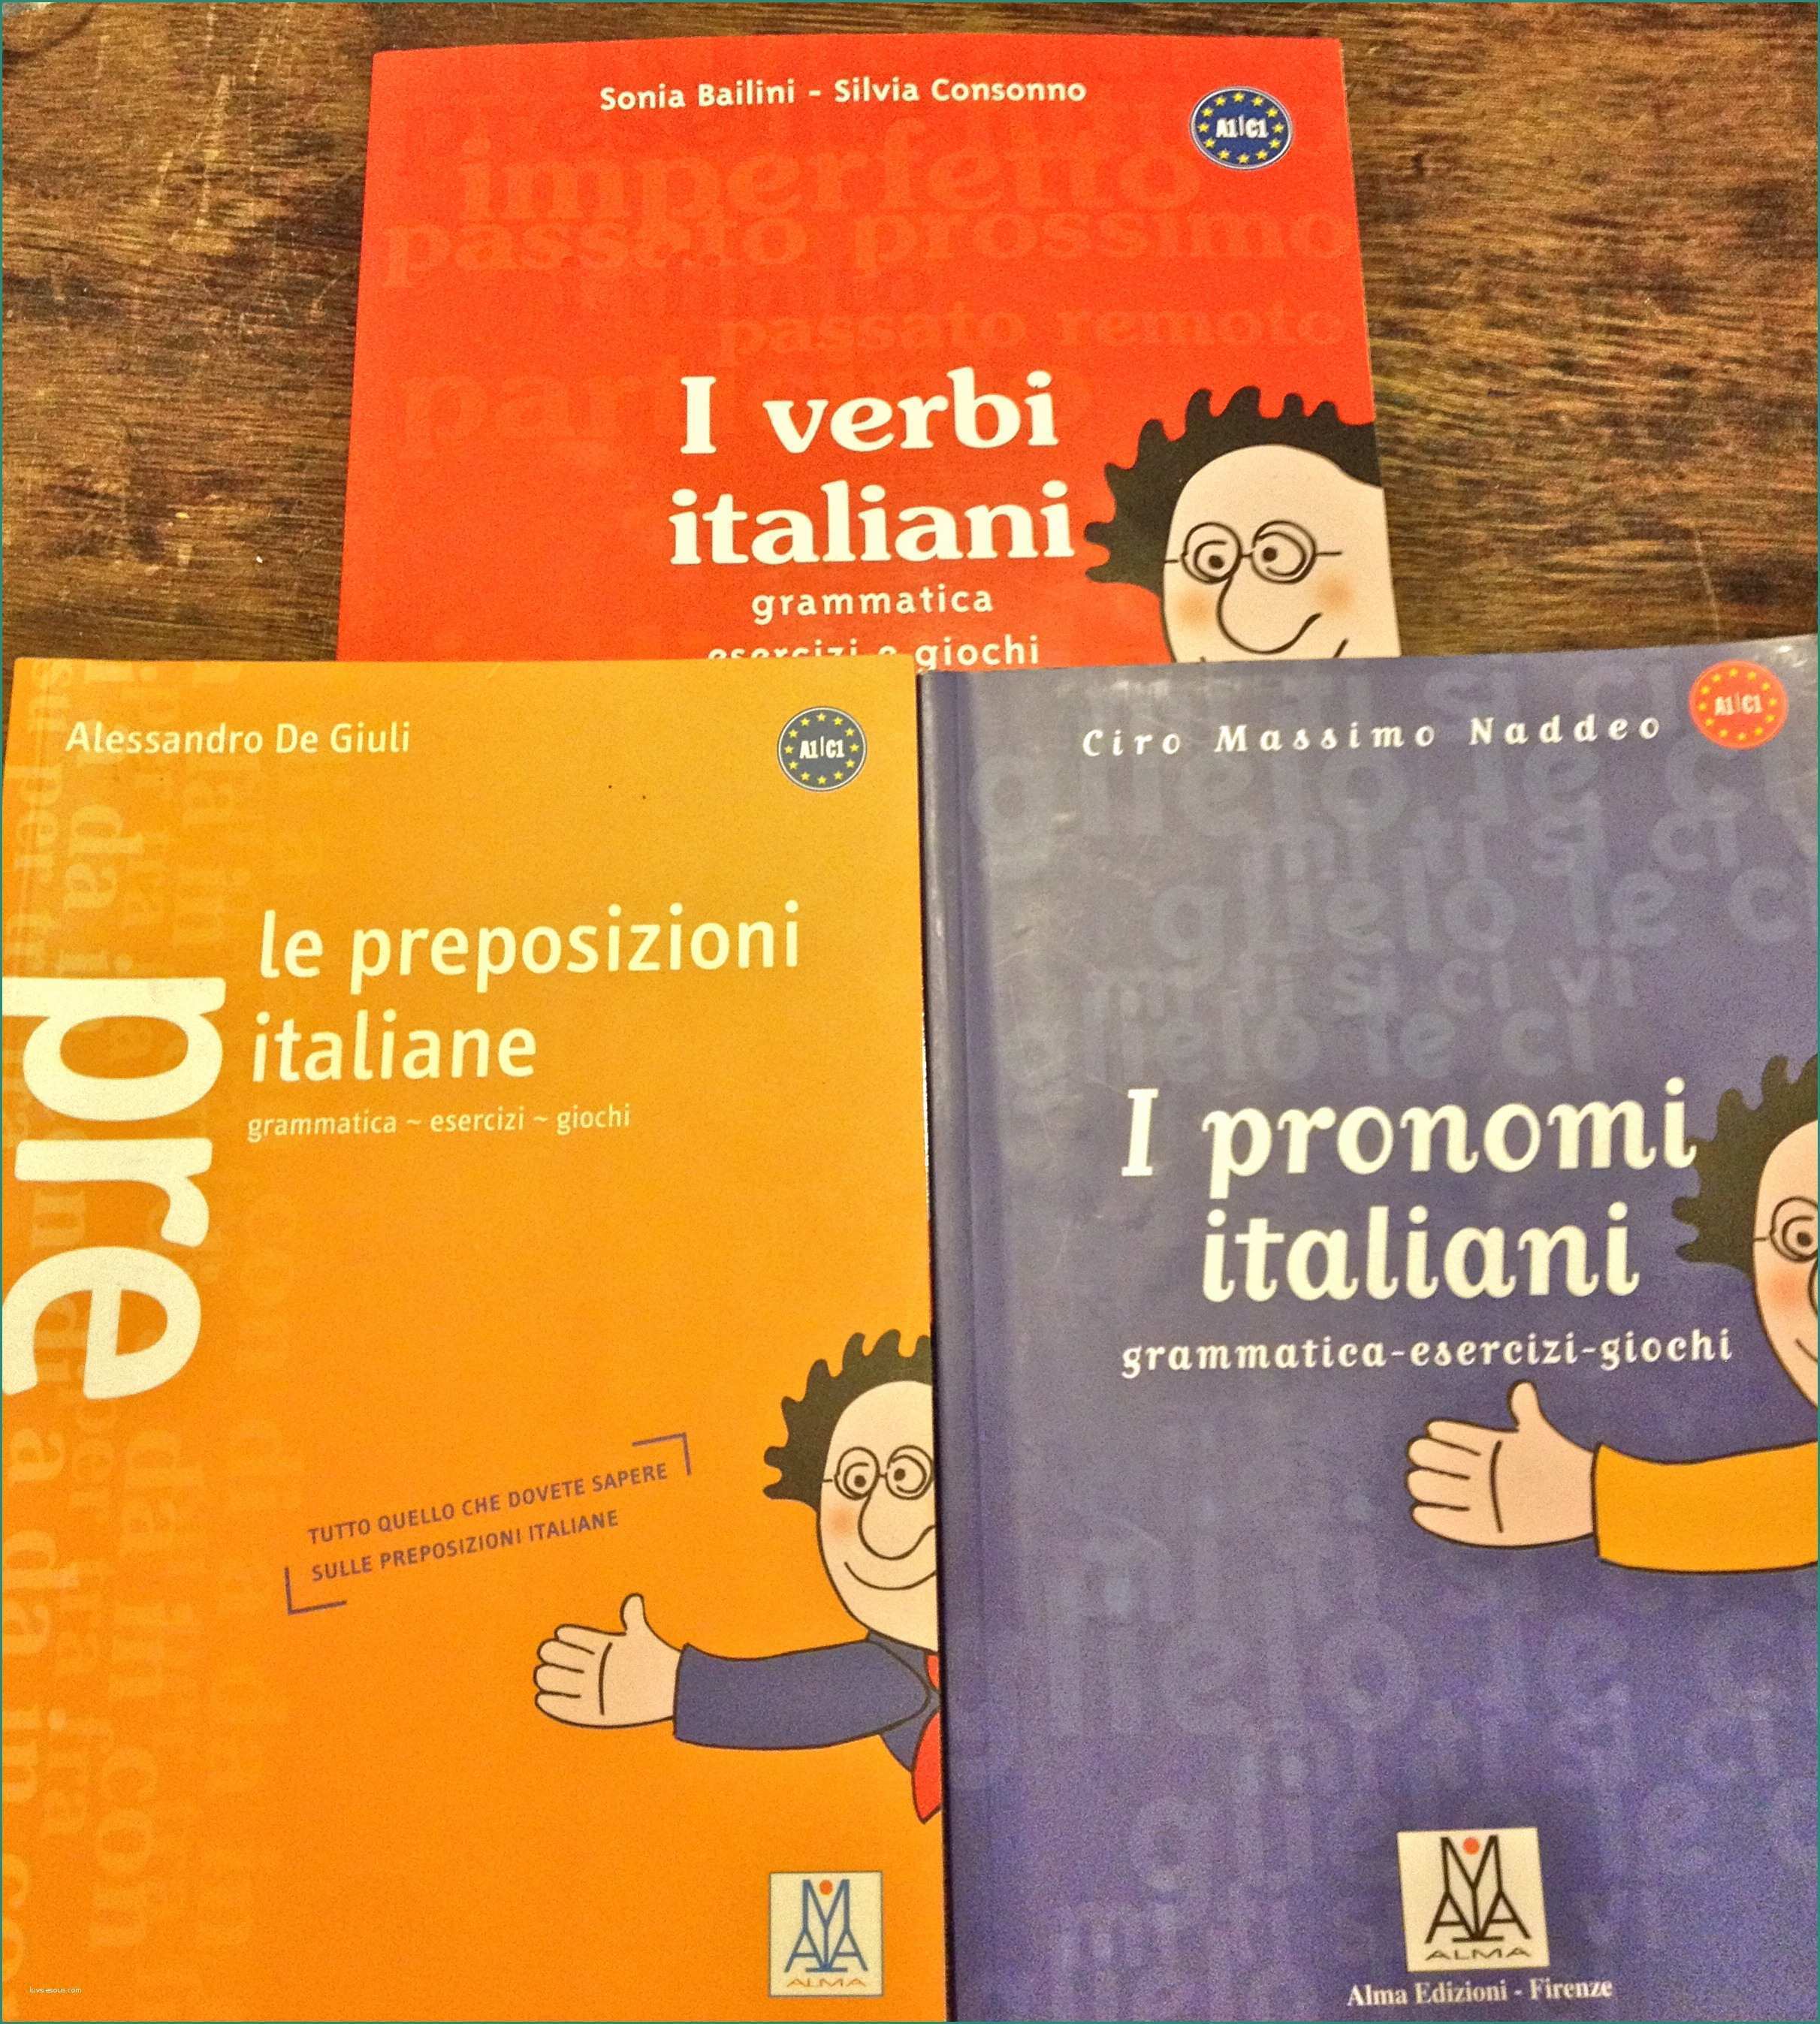 Esercizi Articoli Indeterminativi E Congiuntivo Grammatica T Learning Italian Italian